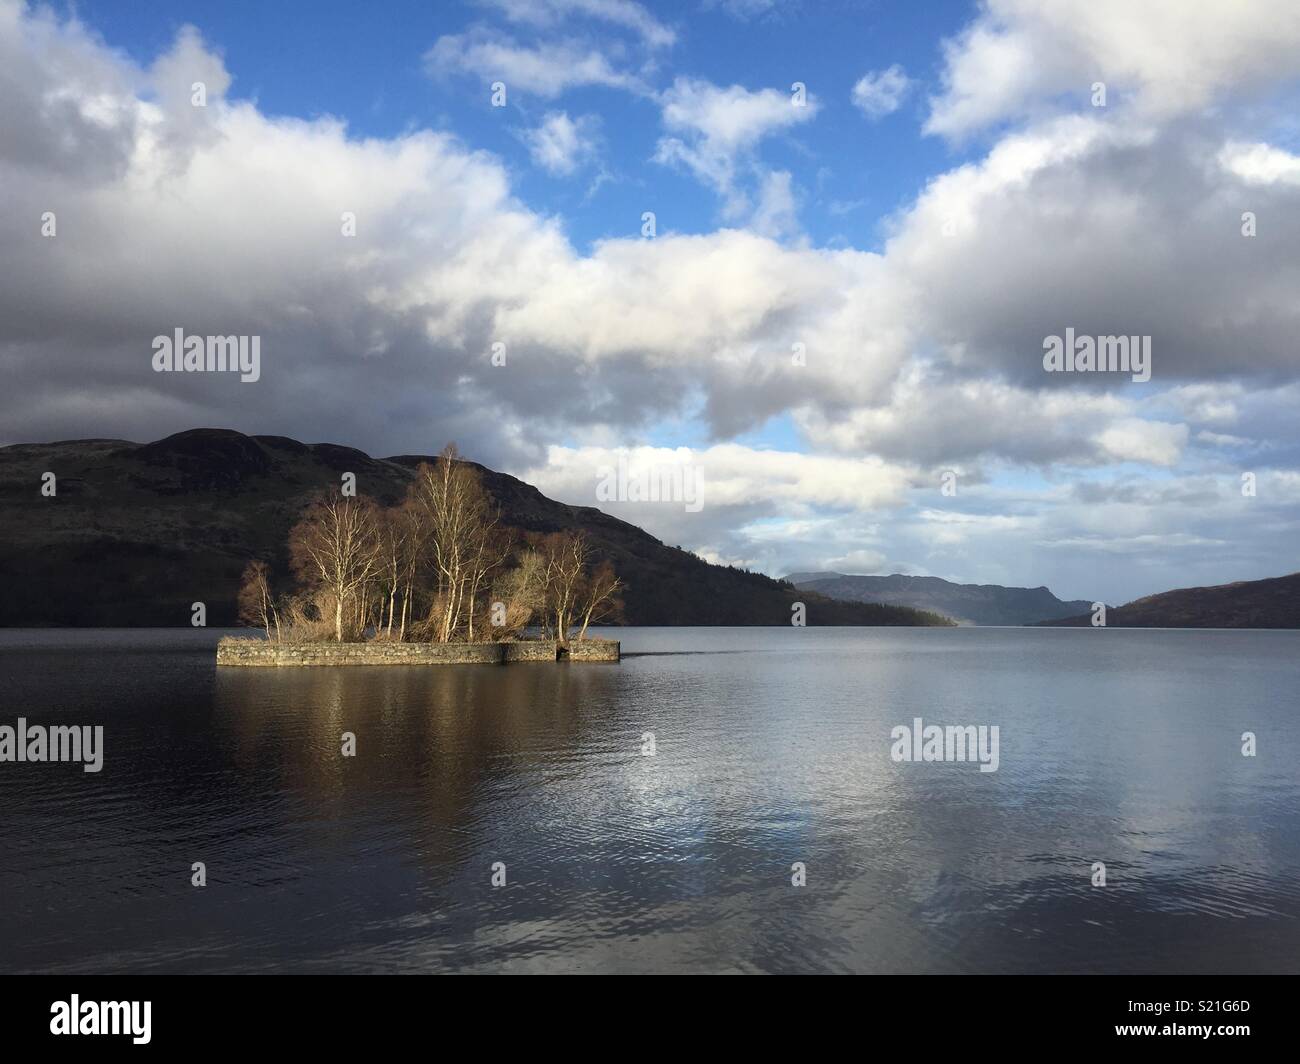 24/04/18 Loch Katrine, Stronachlachar, The Trossachs, Scotland Stock Photo